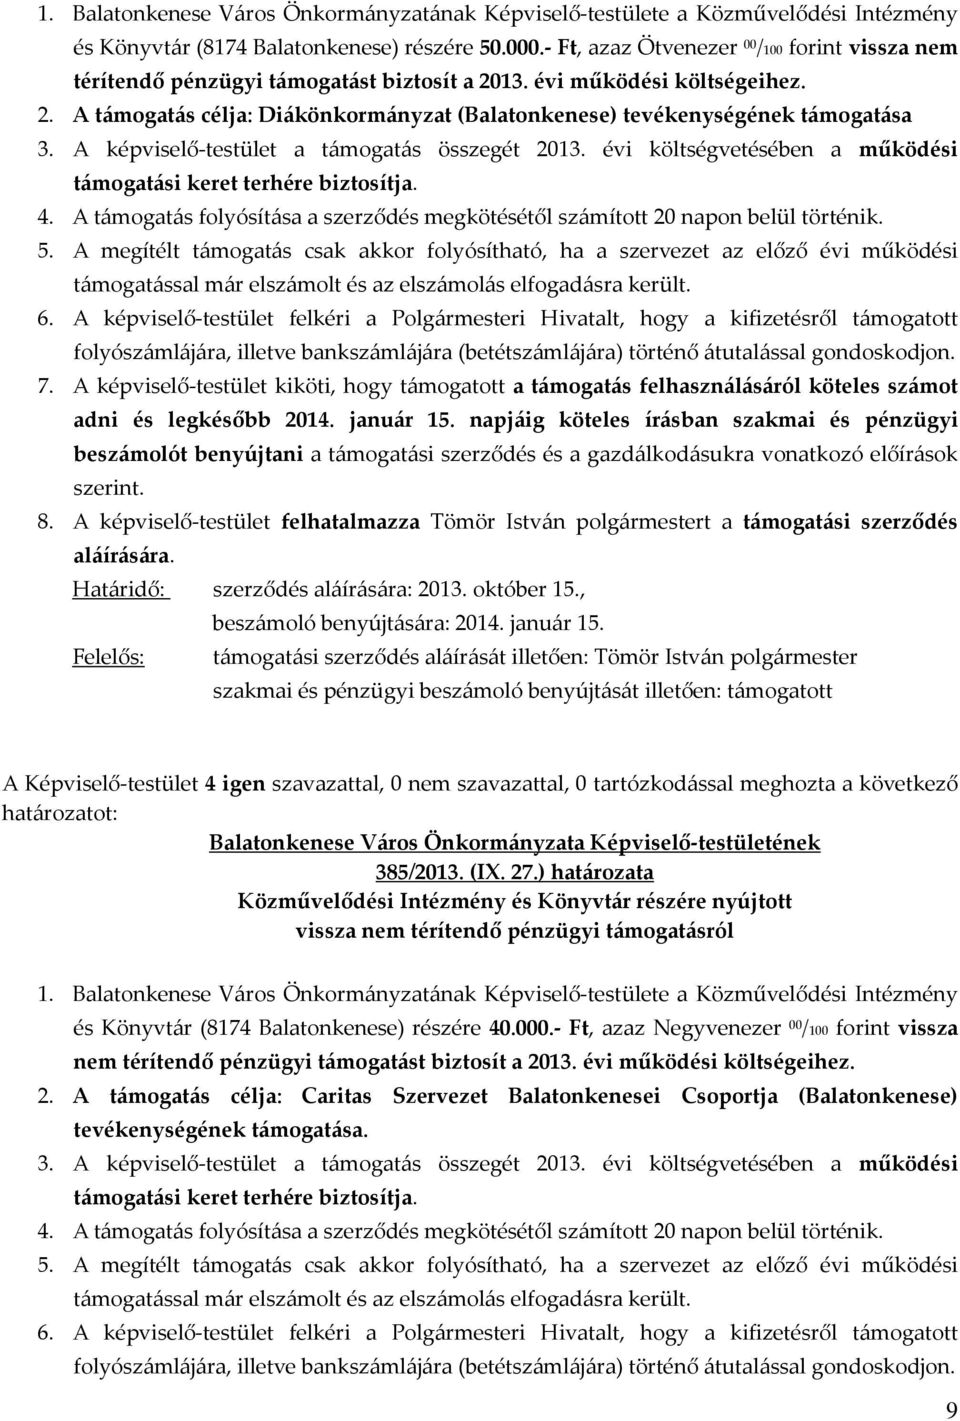 2. A támogatás célja: Diákönkormányzat (Balatonkenese) tevékenységének támogatása 385/2013. (IX. 27.